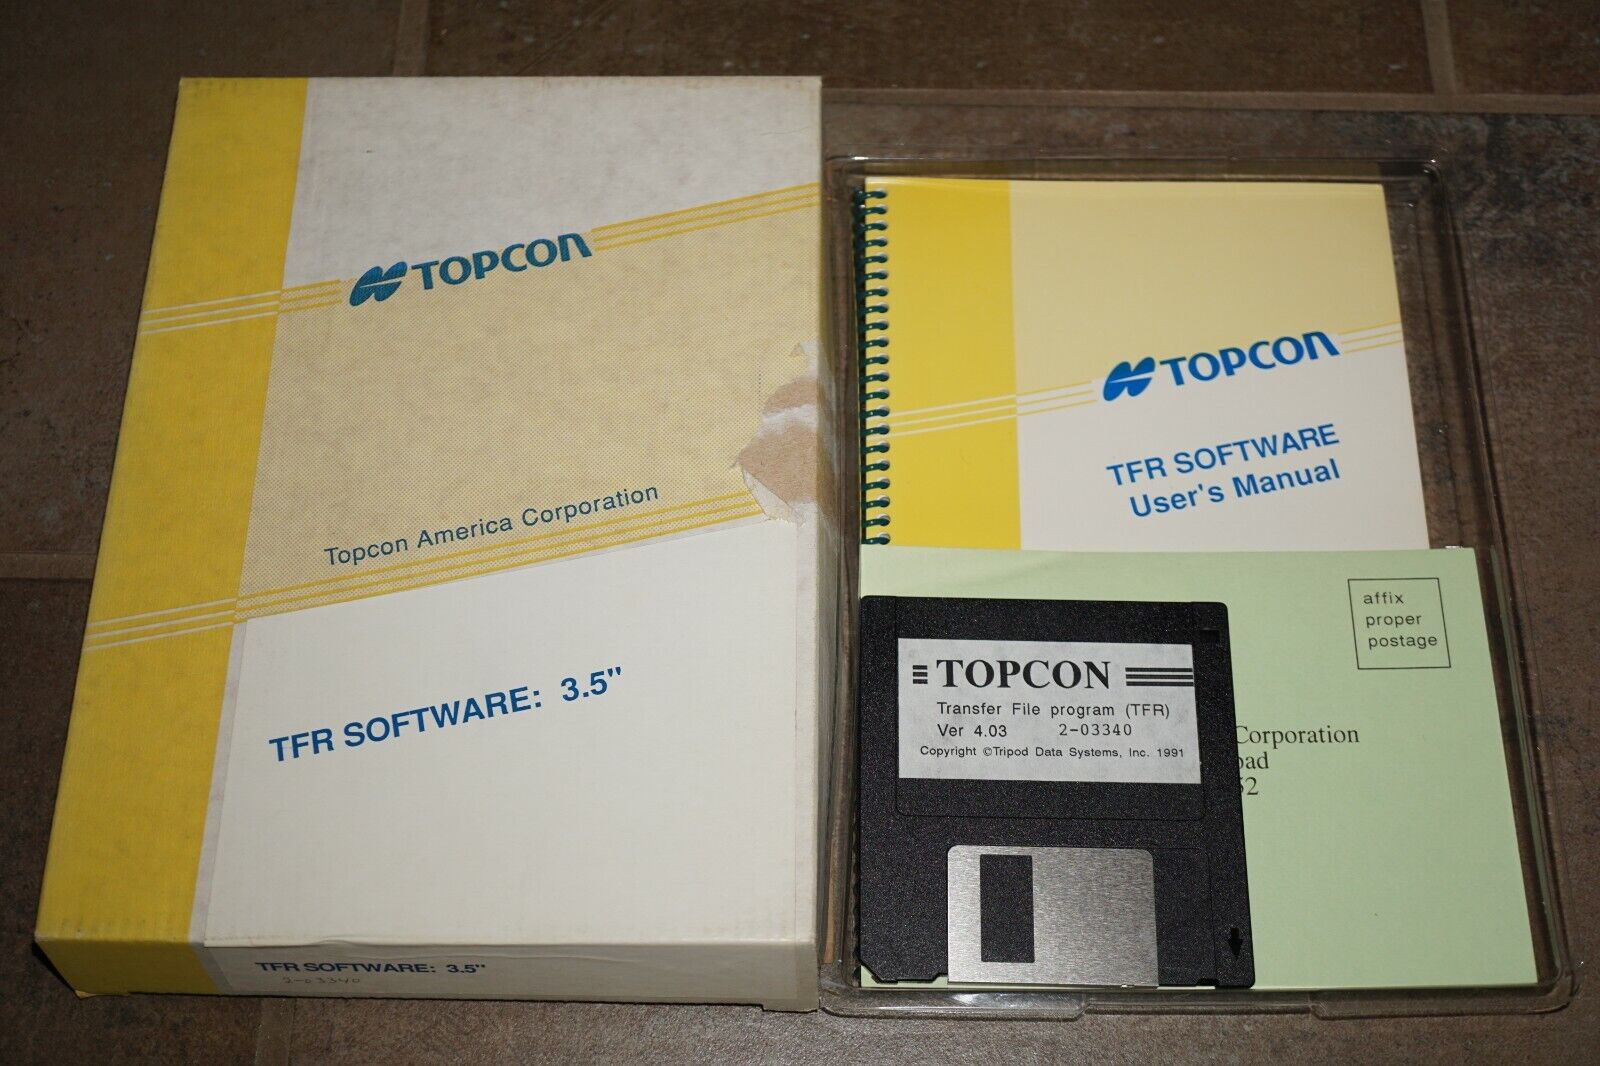 Topcon Transfer File Program (TFR) 3.5